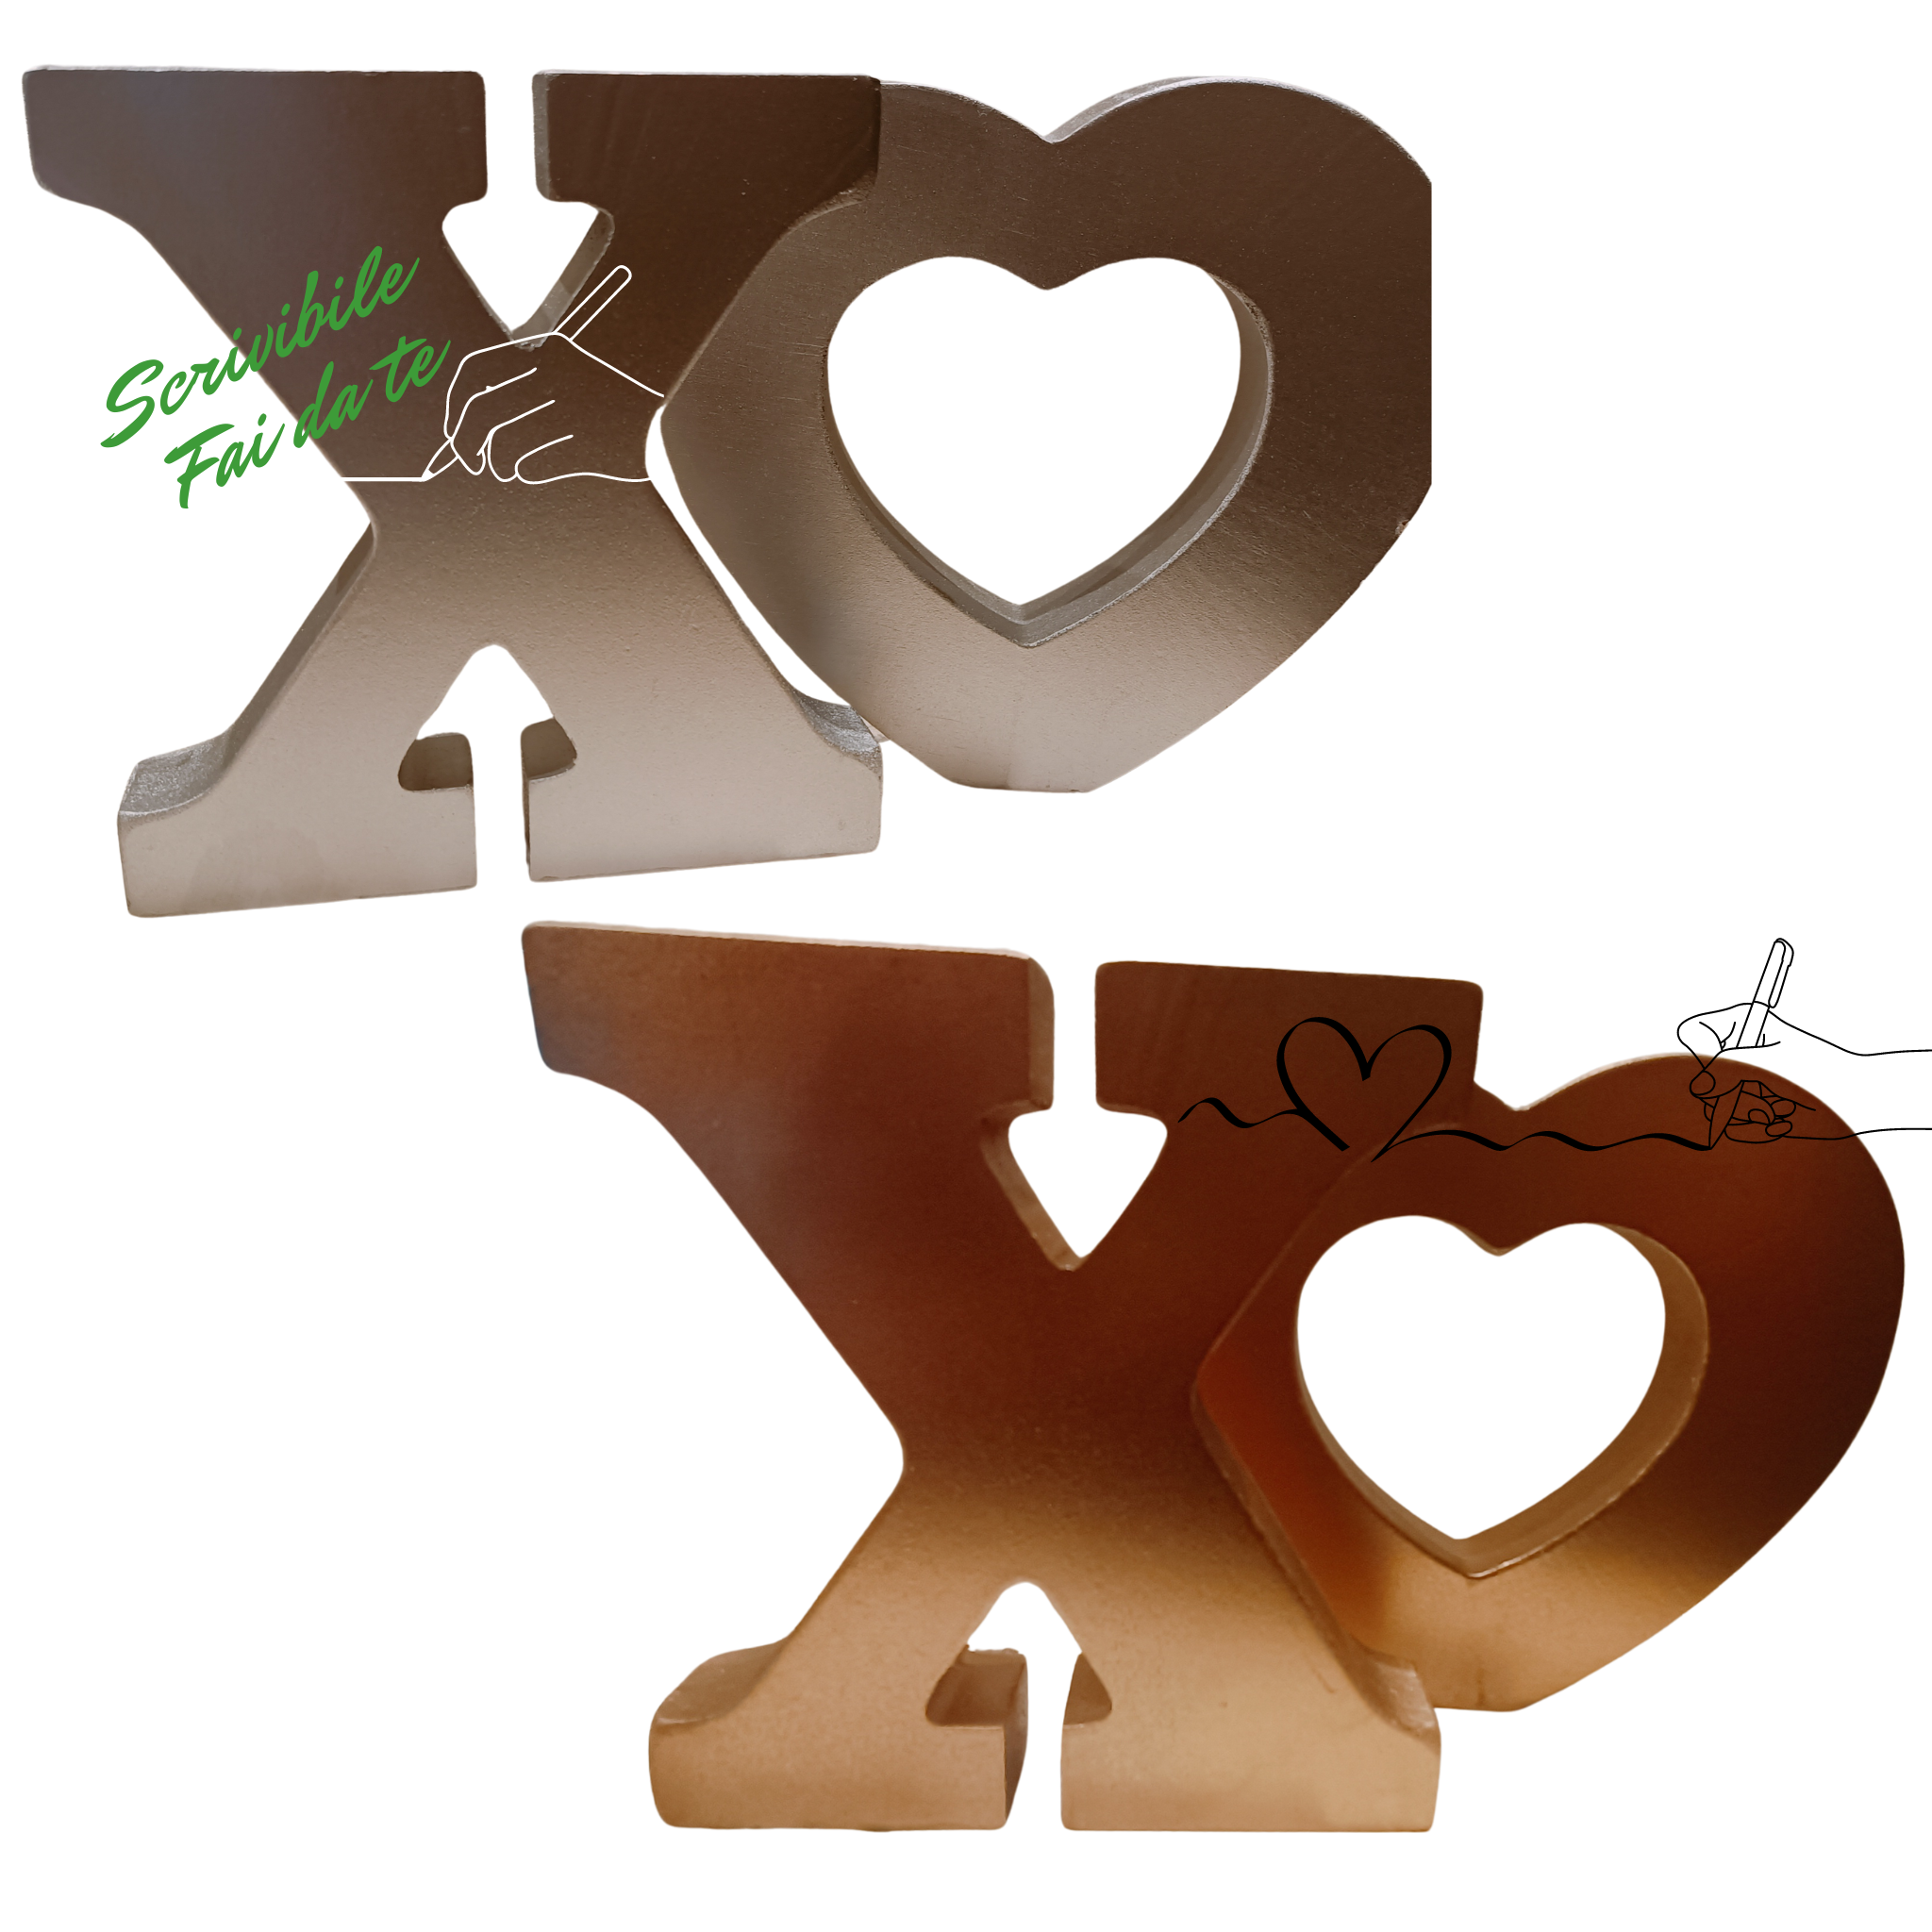 Featured image for “Set 1 lettera x e un cuore in legno da appoggiare”